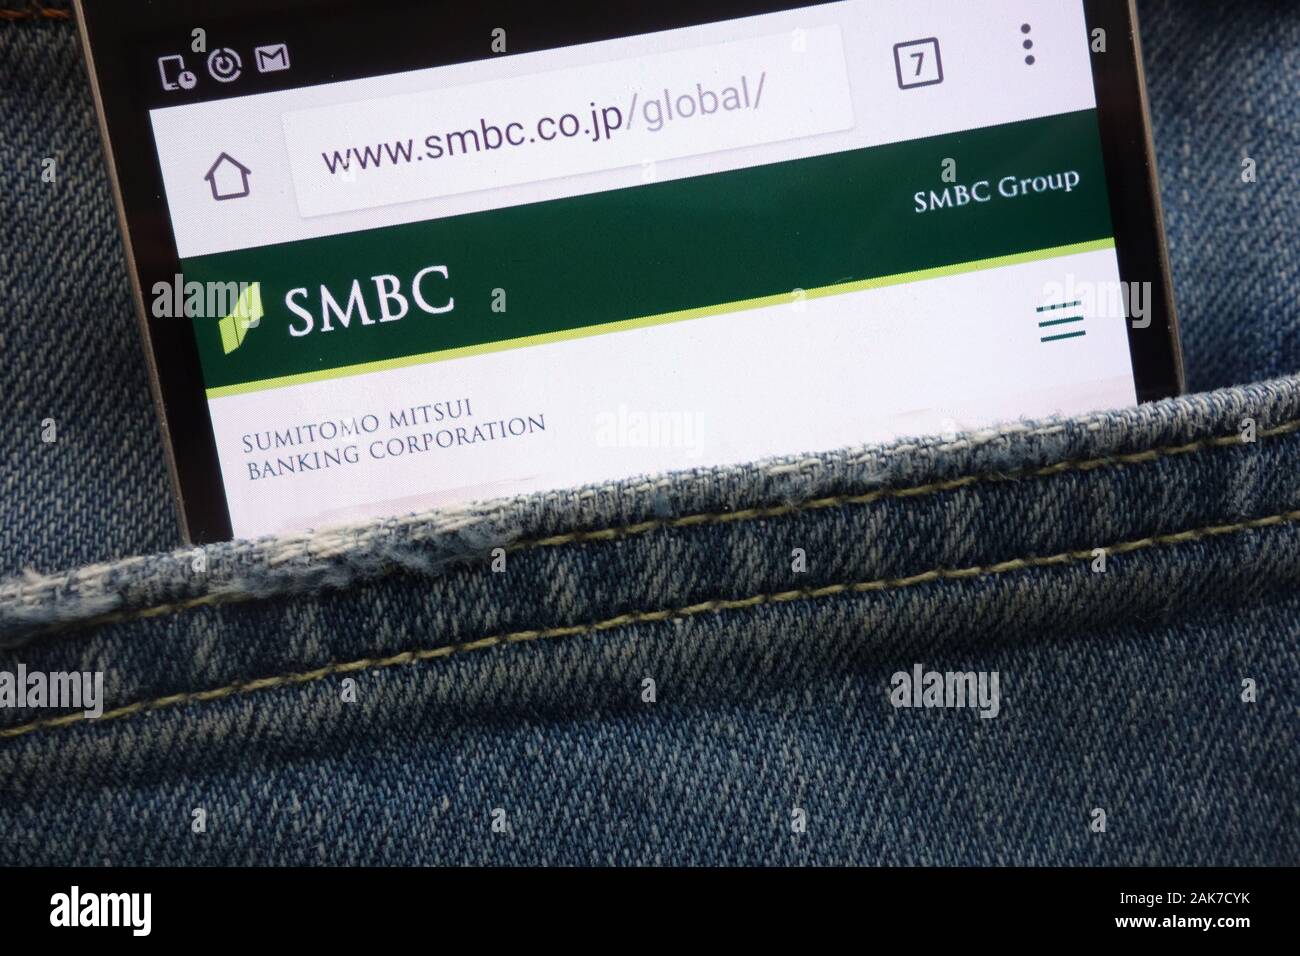 Sumitomo Mitsui Banking Corporation (SMBC) Sito web visualizzato sullo smartphone nascosto nella tasca dei jeans Foto Stock